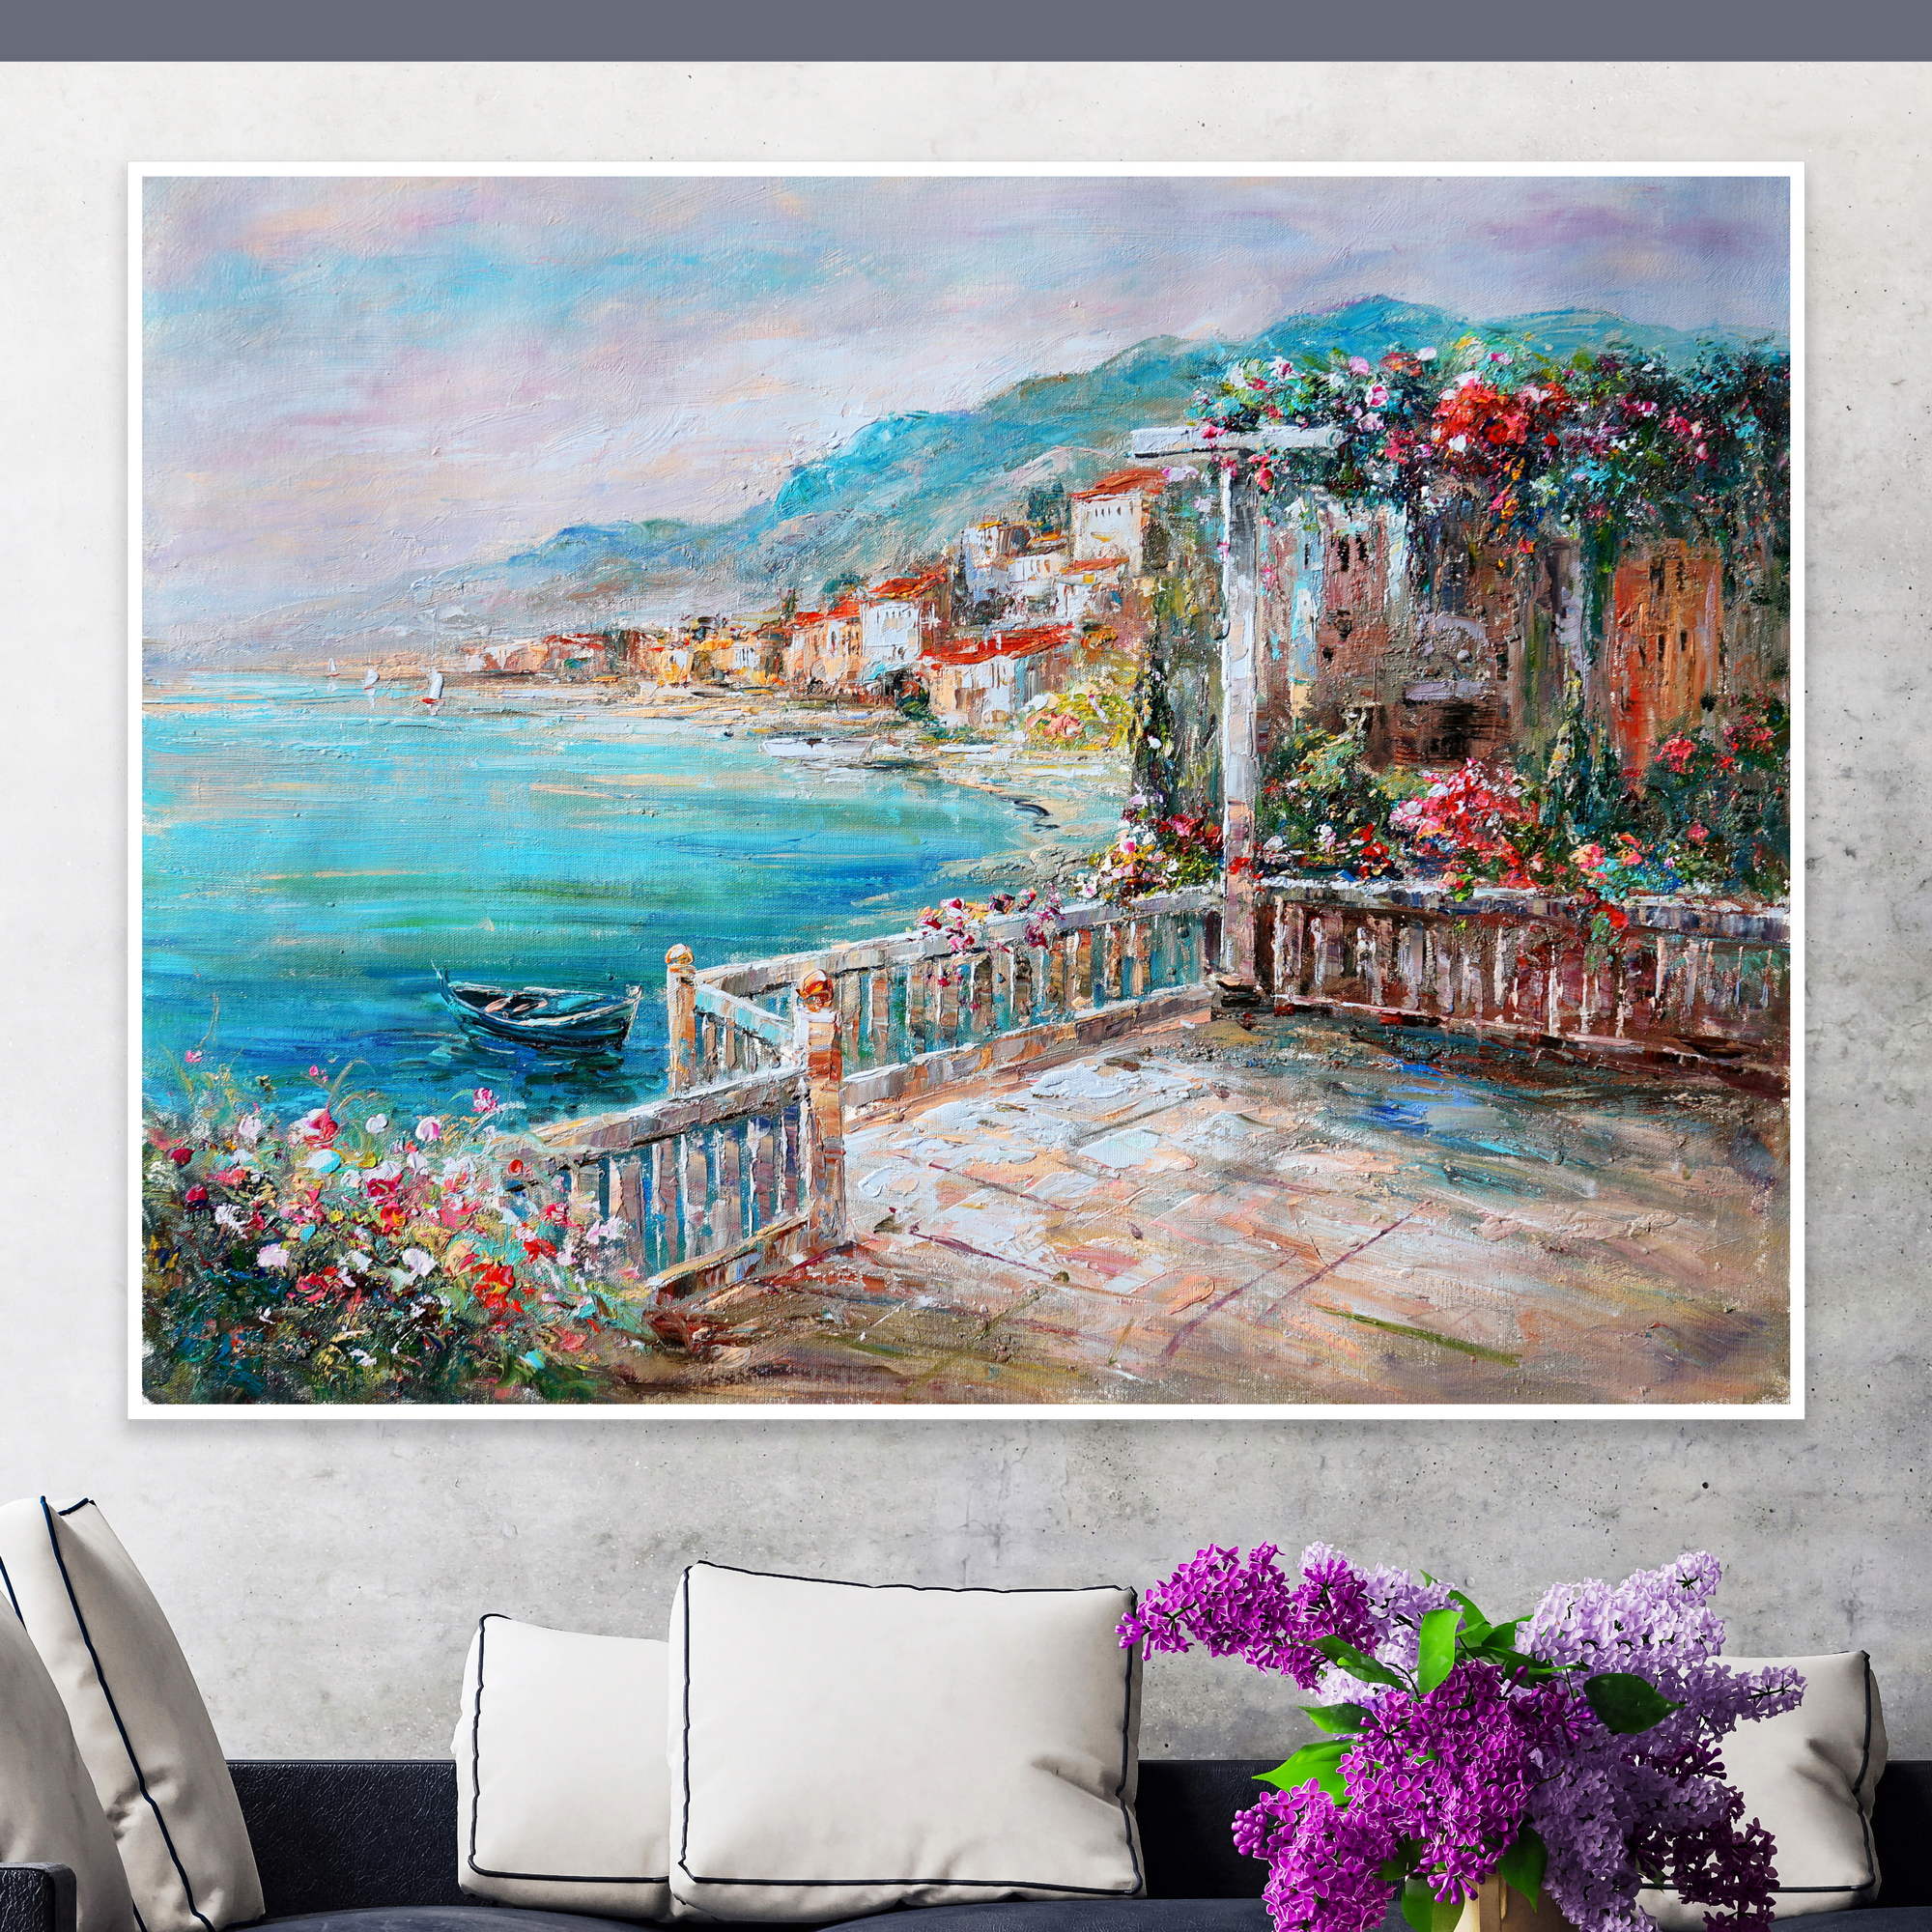 Dipinto di una terrazza fiorita con vista sulla costa del lago di Garda.